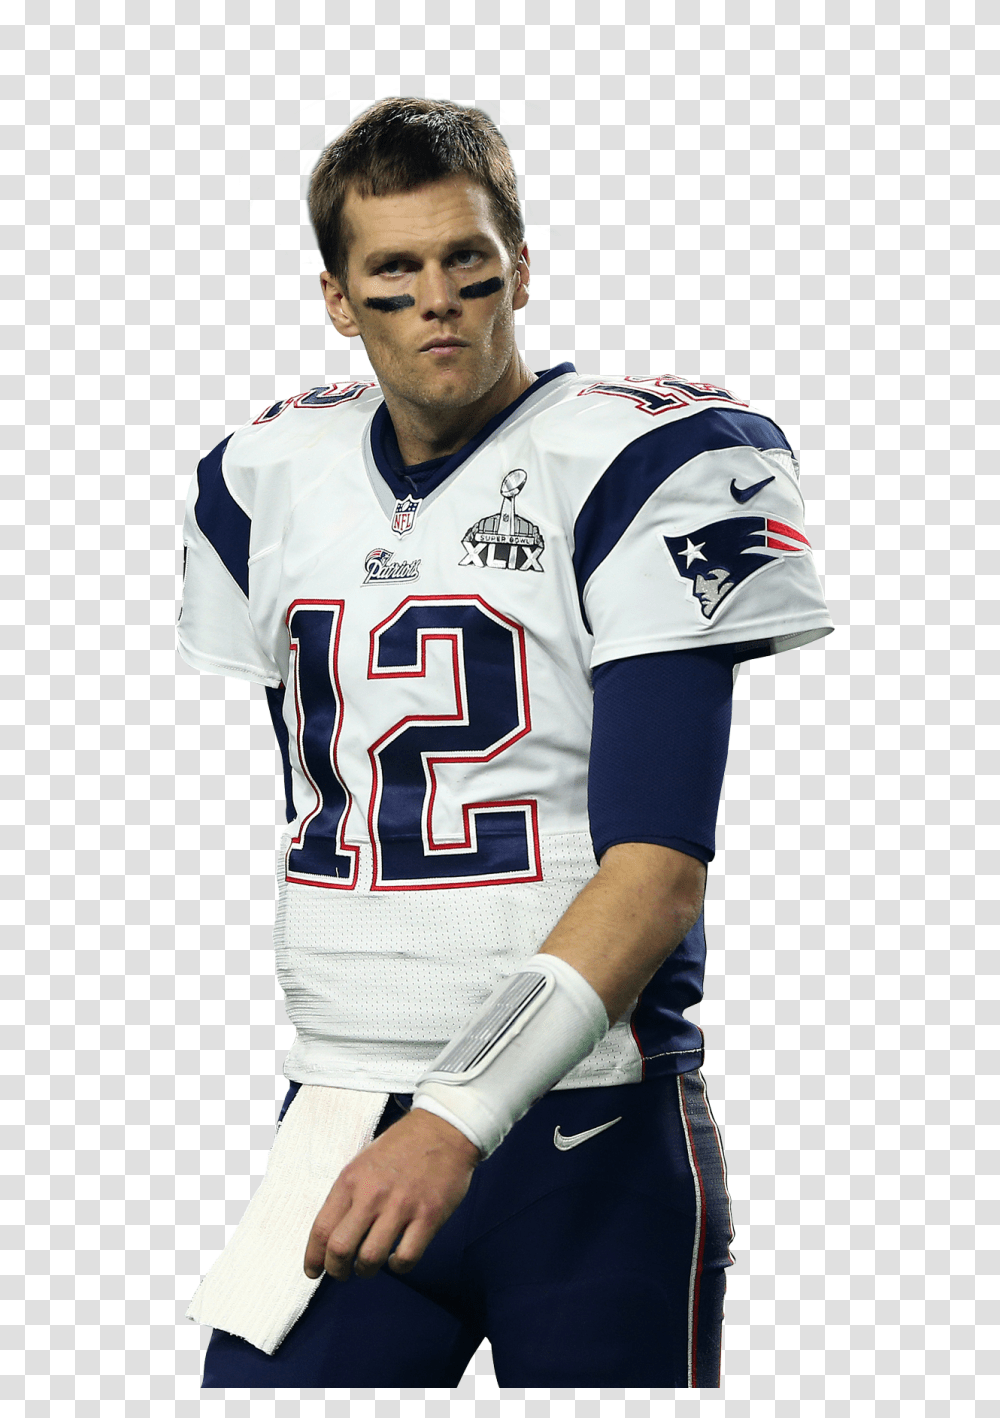 Tom Brady Image Quarterback New England Patriots, Clothing, Apparel, Shirt, Jersey Transparent Png